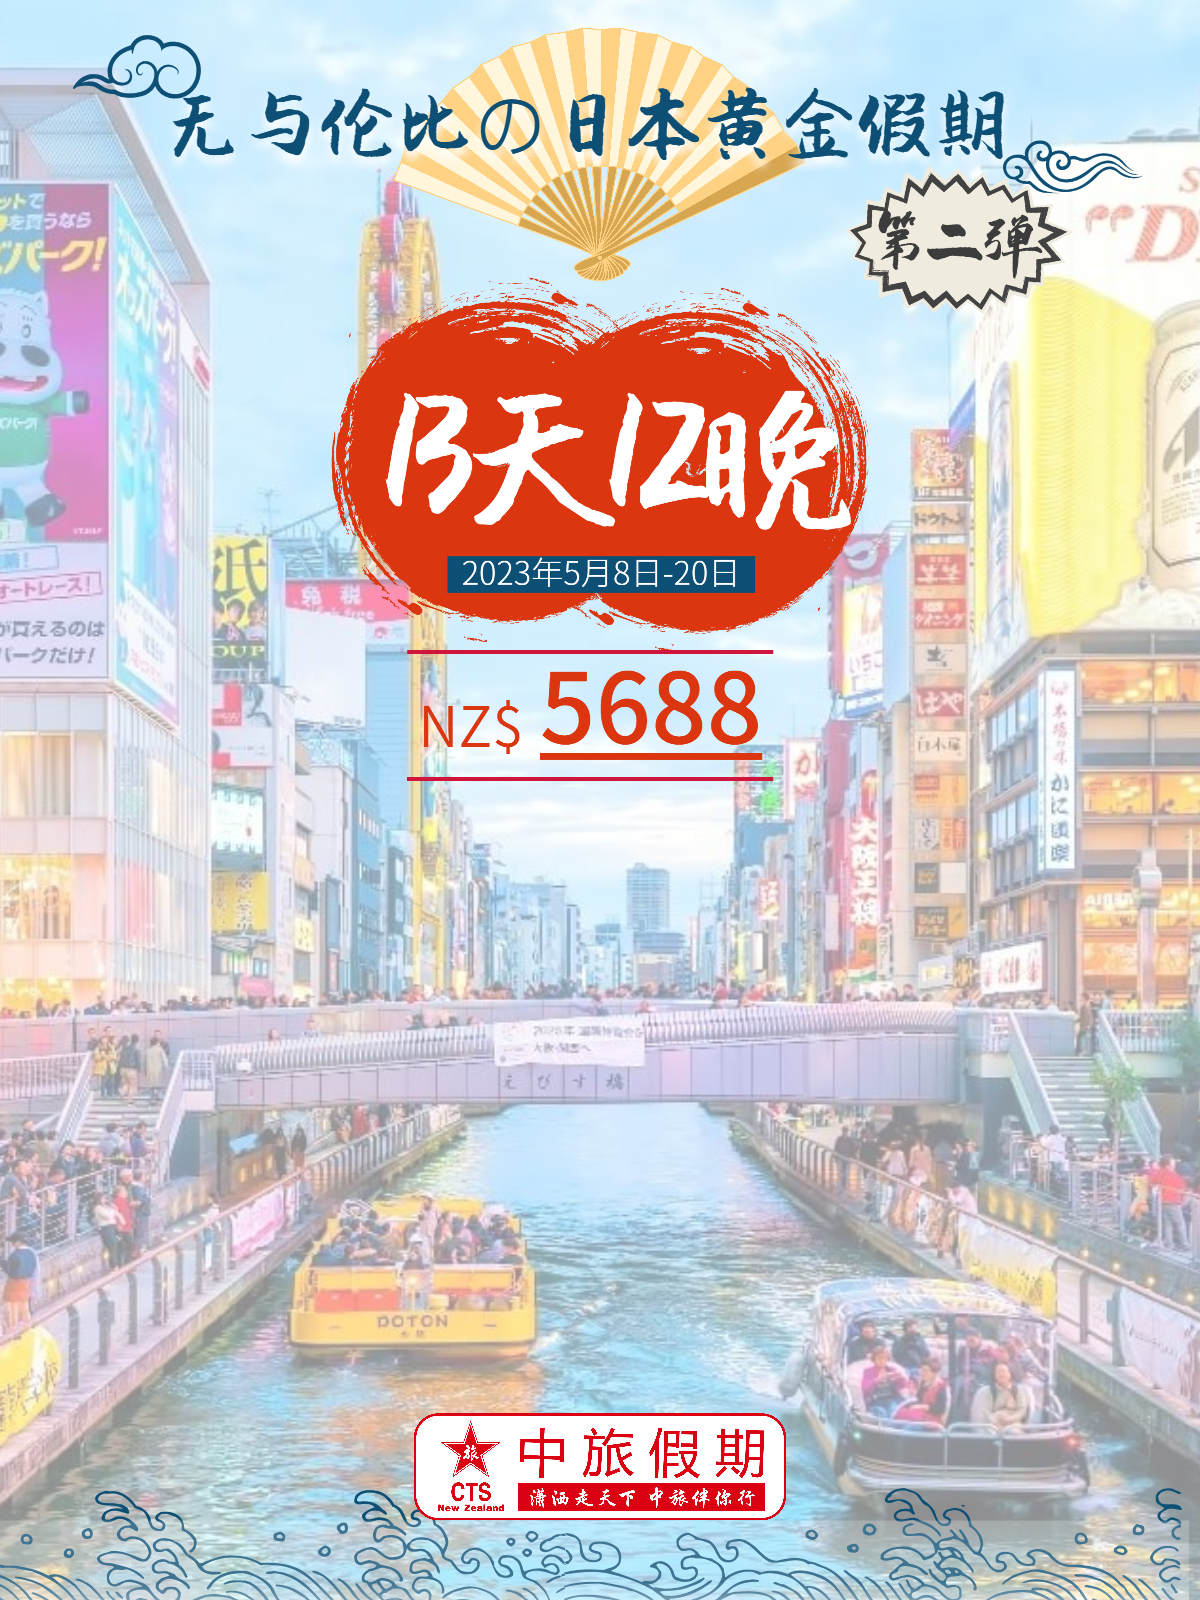 5月日本13天旅遊線路 - 小紅書版_0.jpg